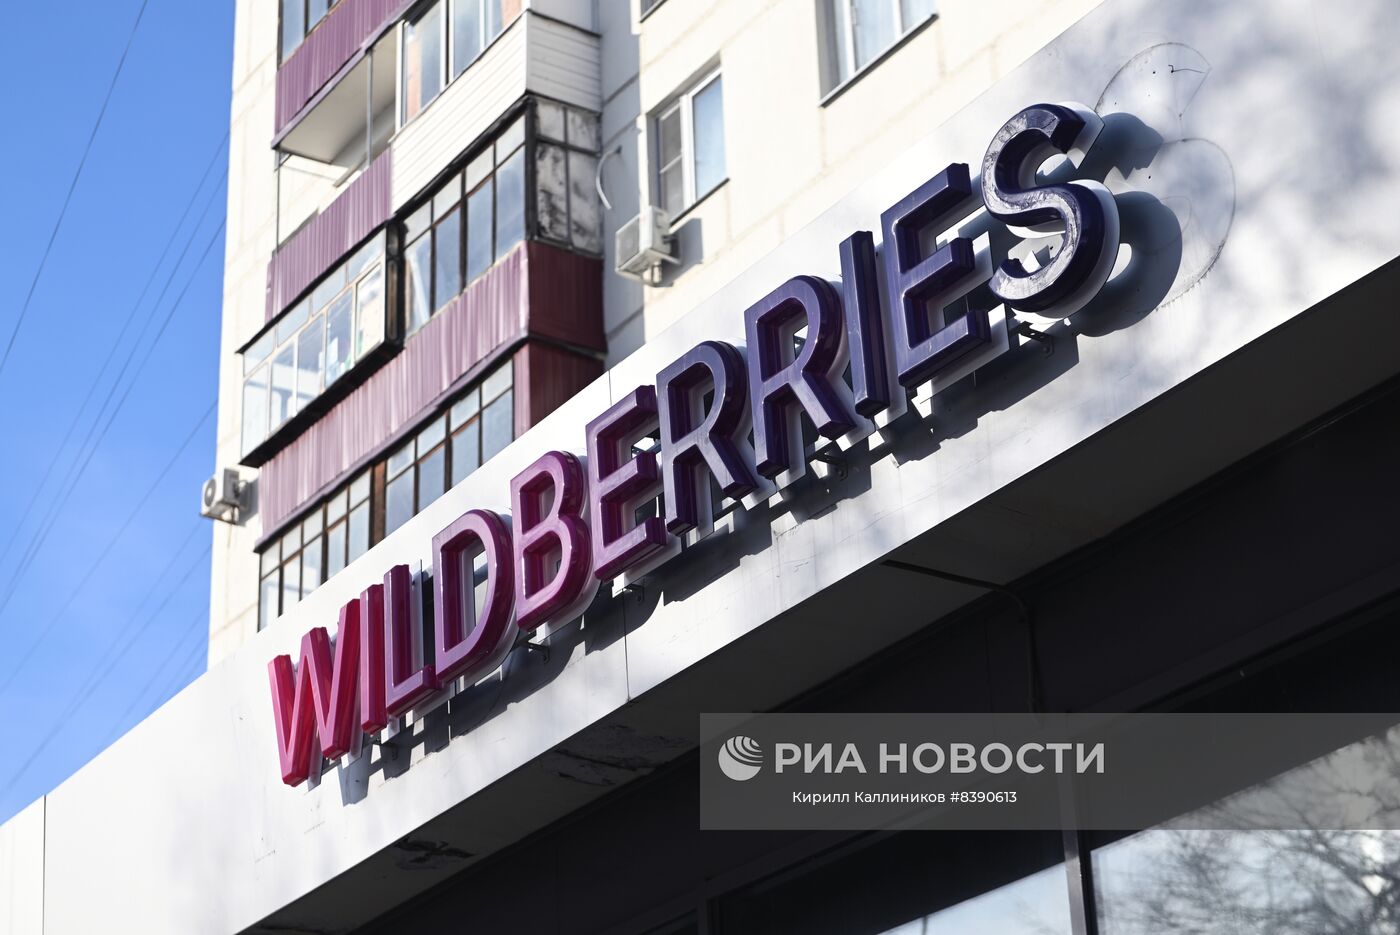 Работа пунктов выдачи интернет-заказов Wildberries в Москве